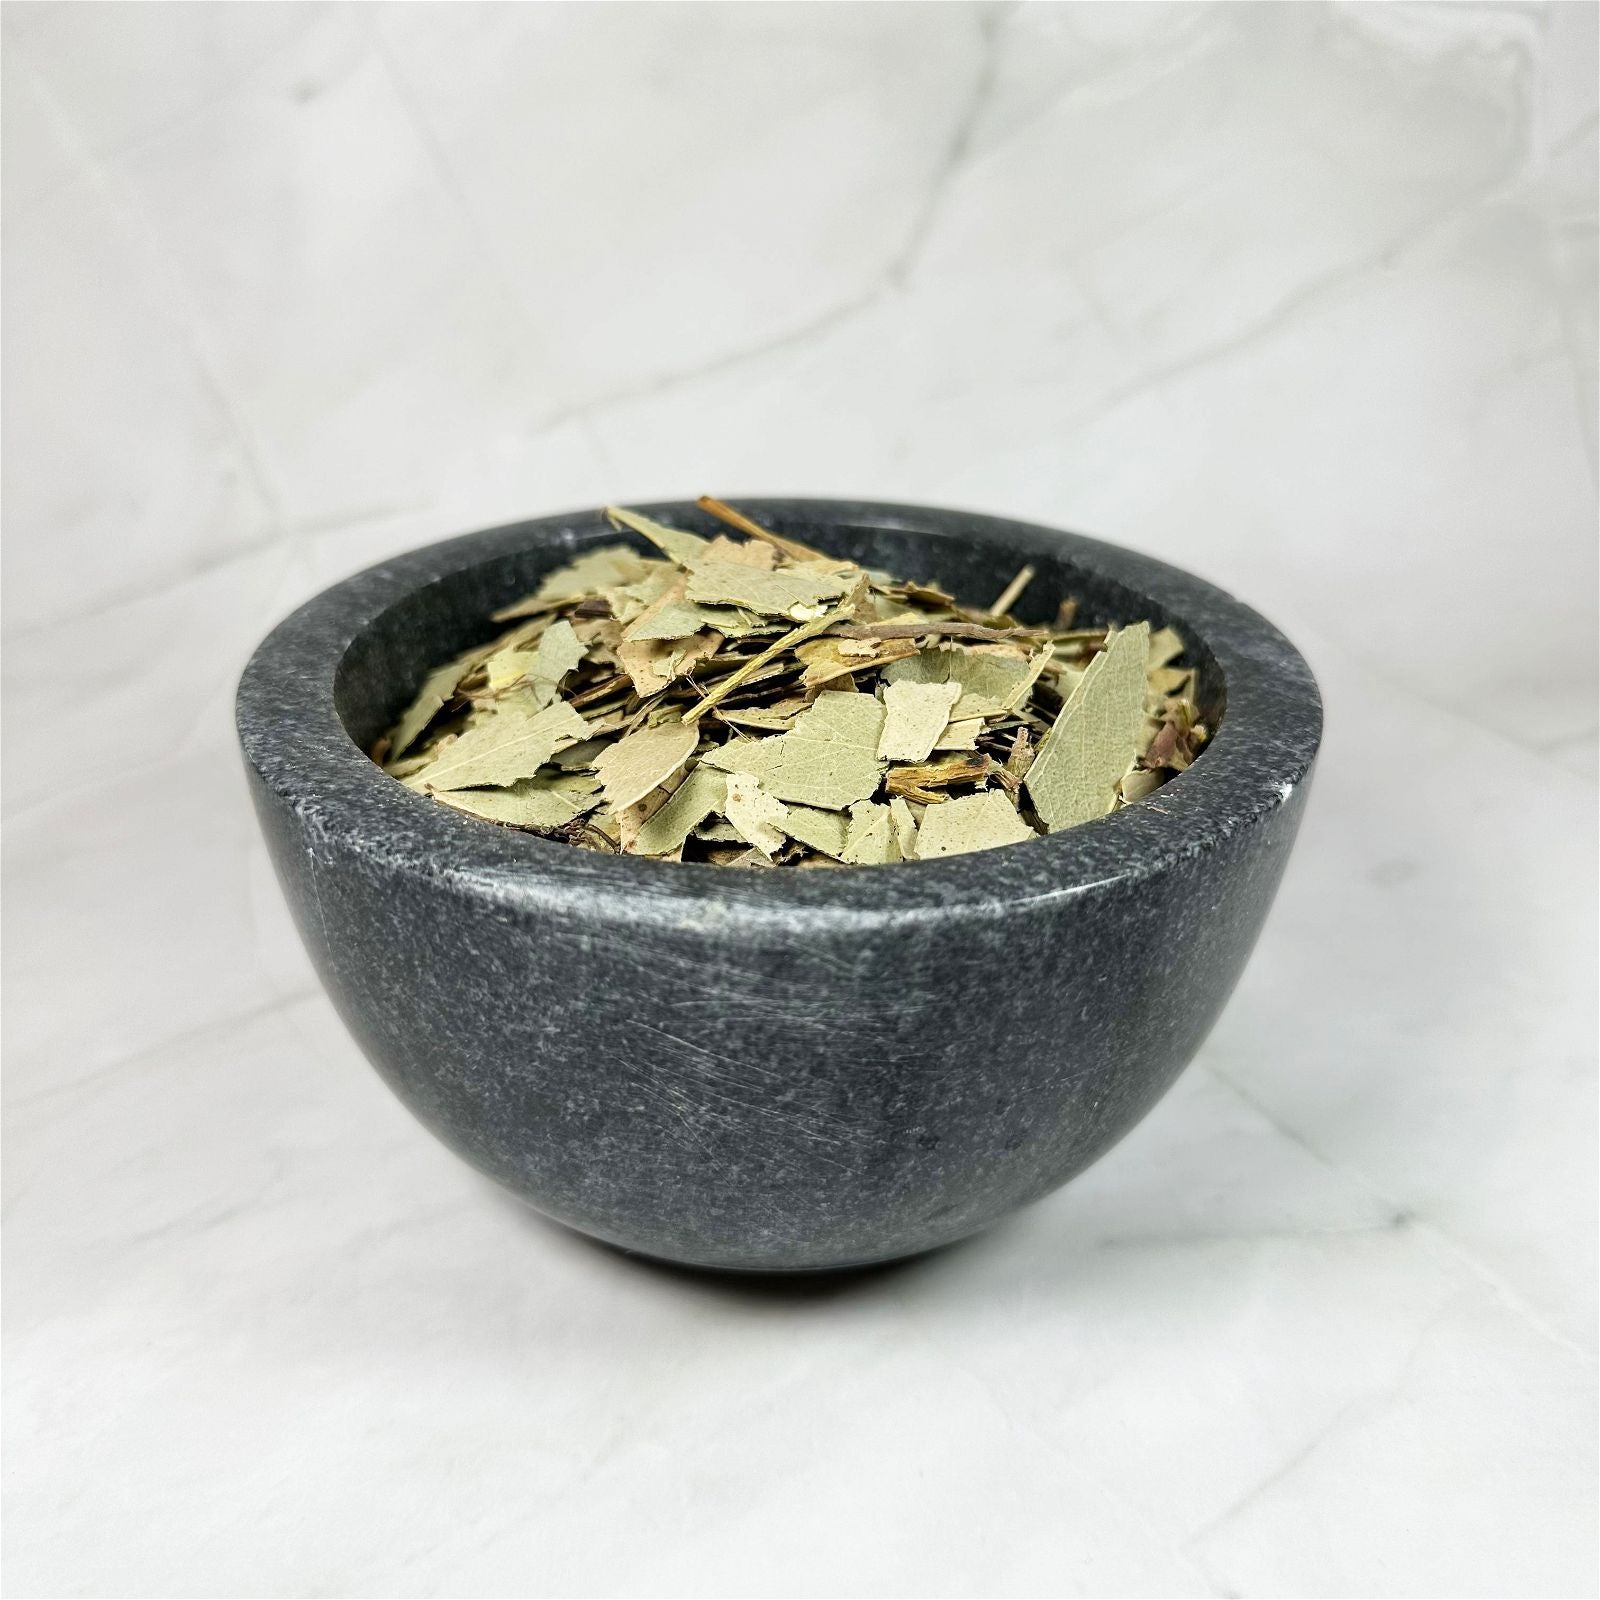 Eucalyptus - Aeternum - a bowl that has a bowl in a bowl  - # boutique ésoterisme# - #wicca# 